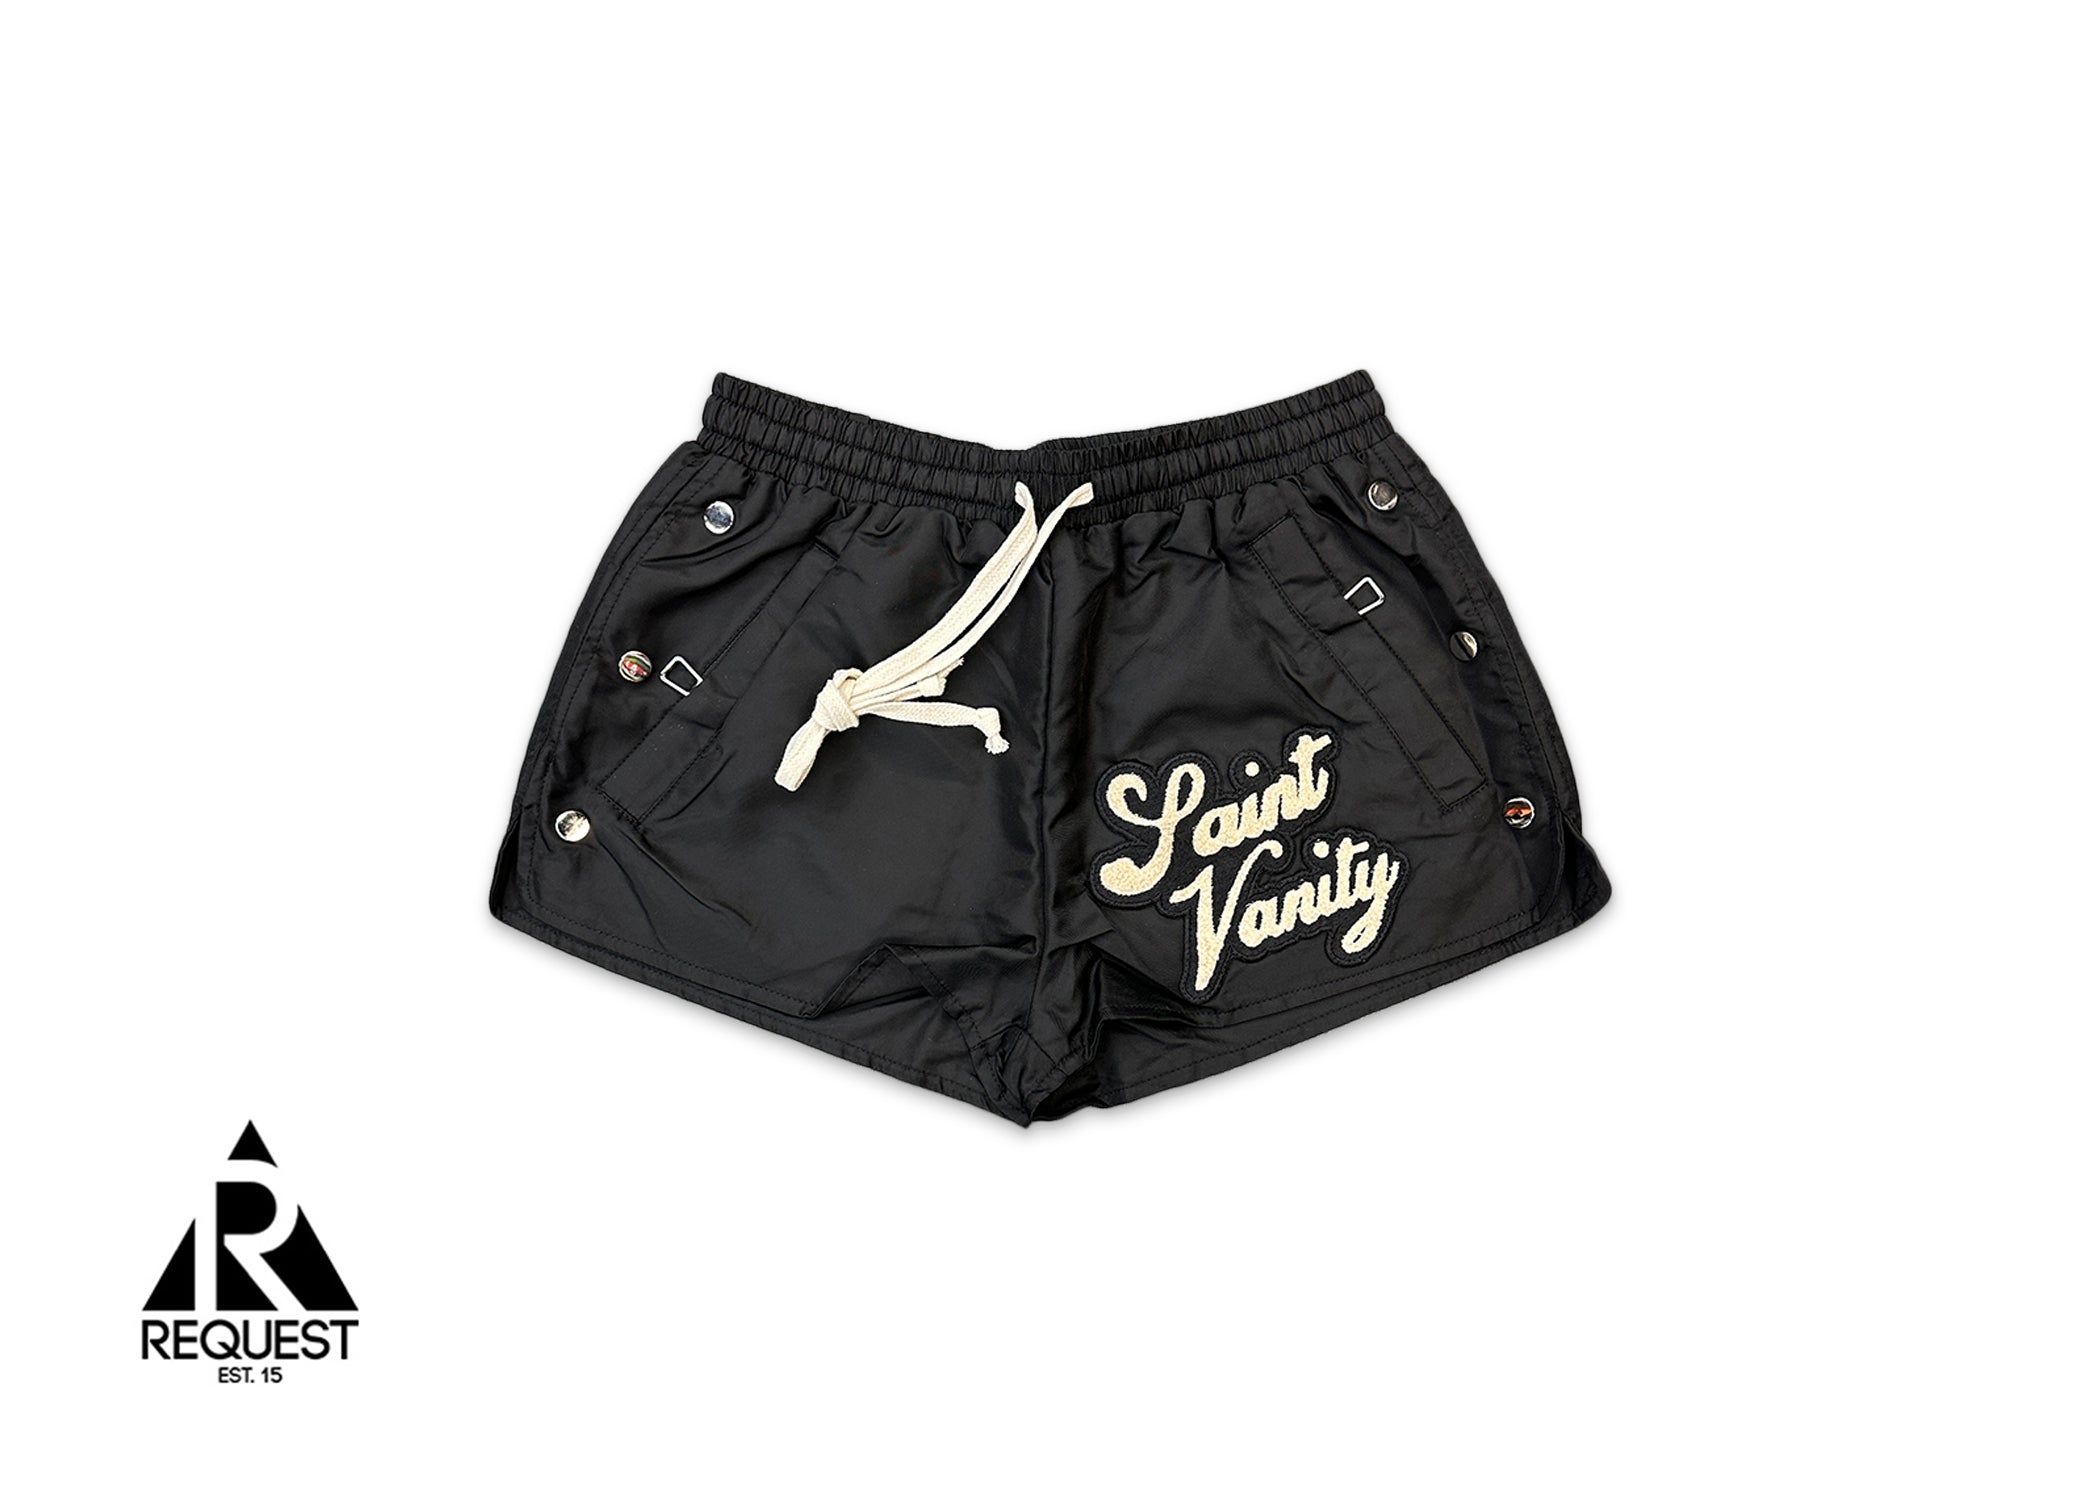 Saint Vanity Logo Nylon Shorts "Black" (W)